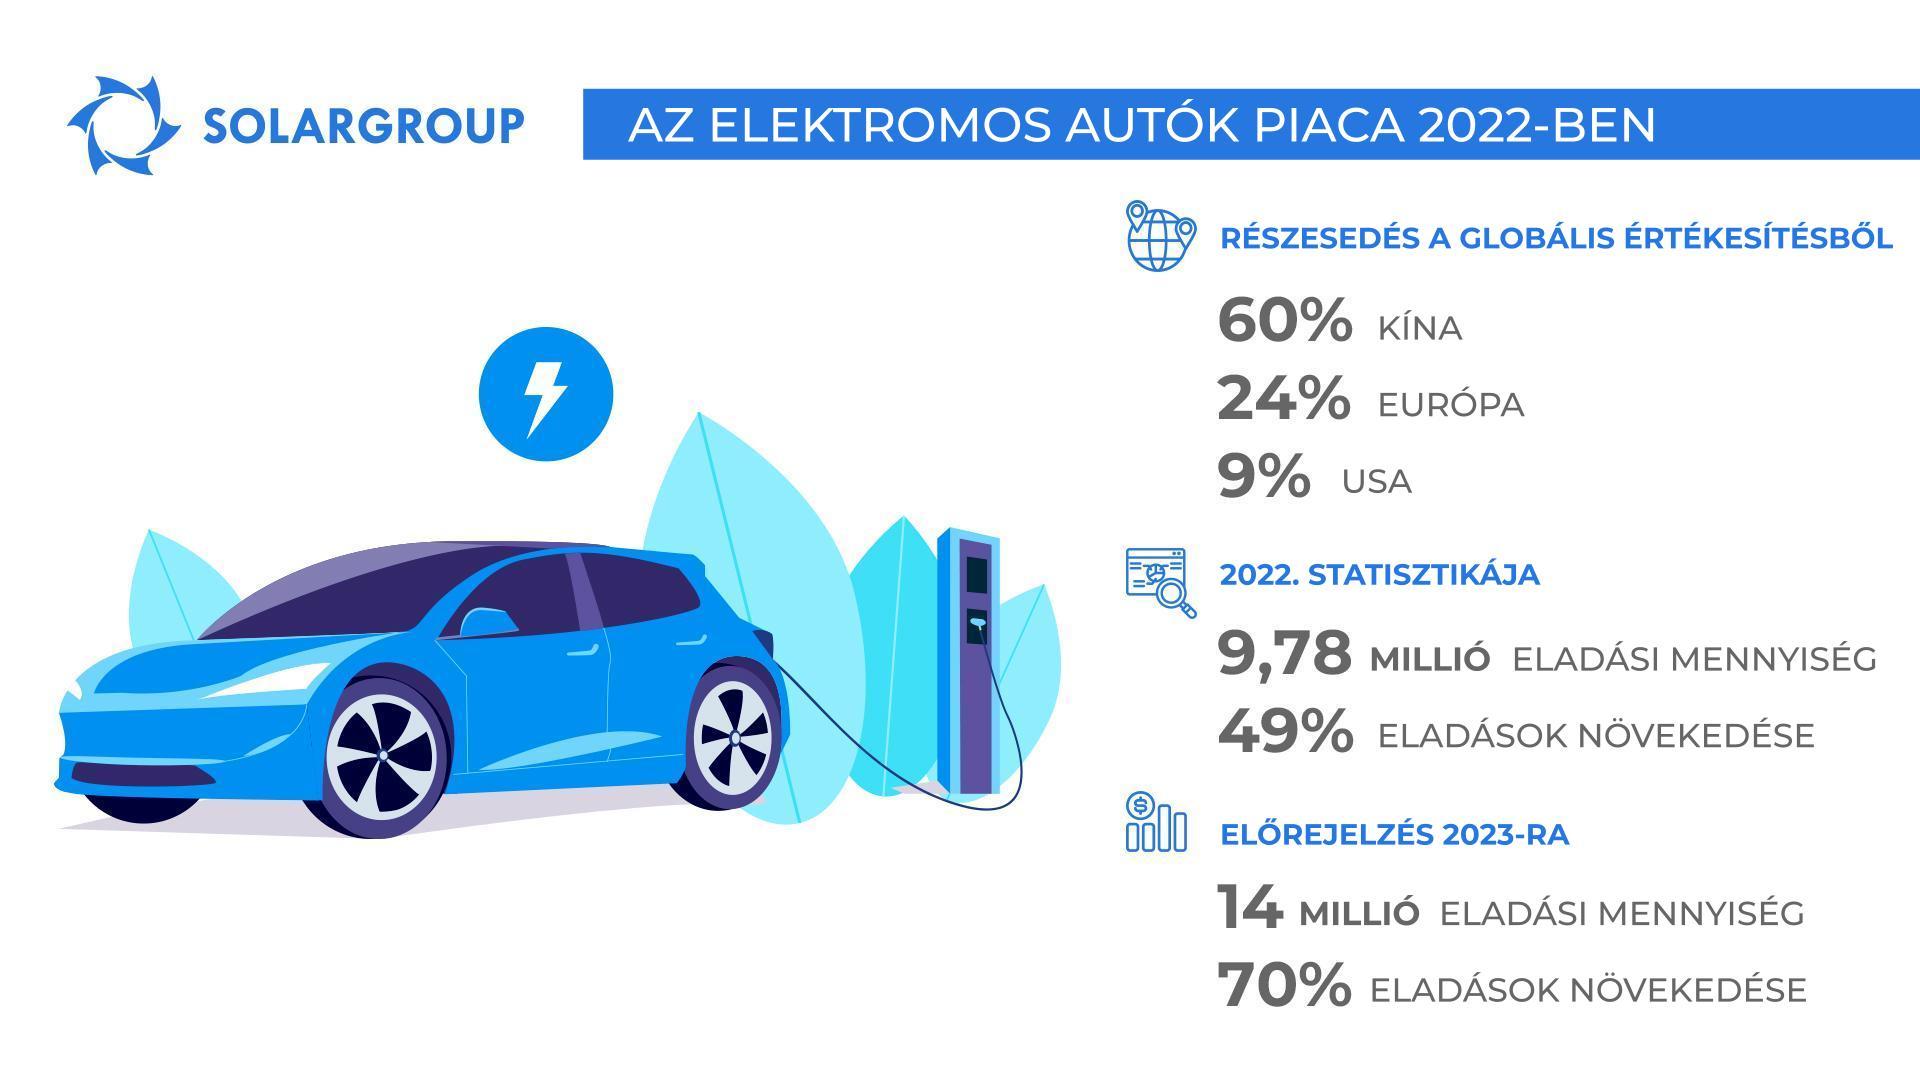 Világszerte minden tizedik eladott autó elektromos: az elektromos autók piacának 2022-es évi összesítője